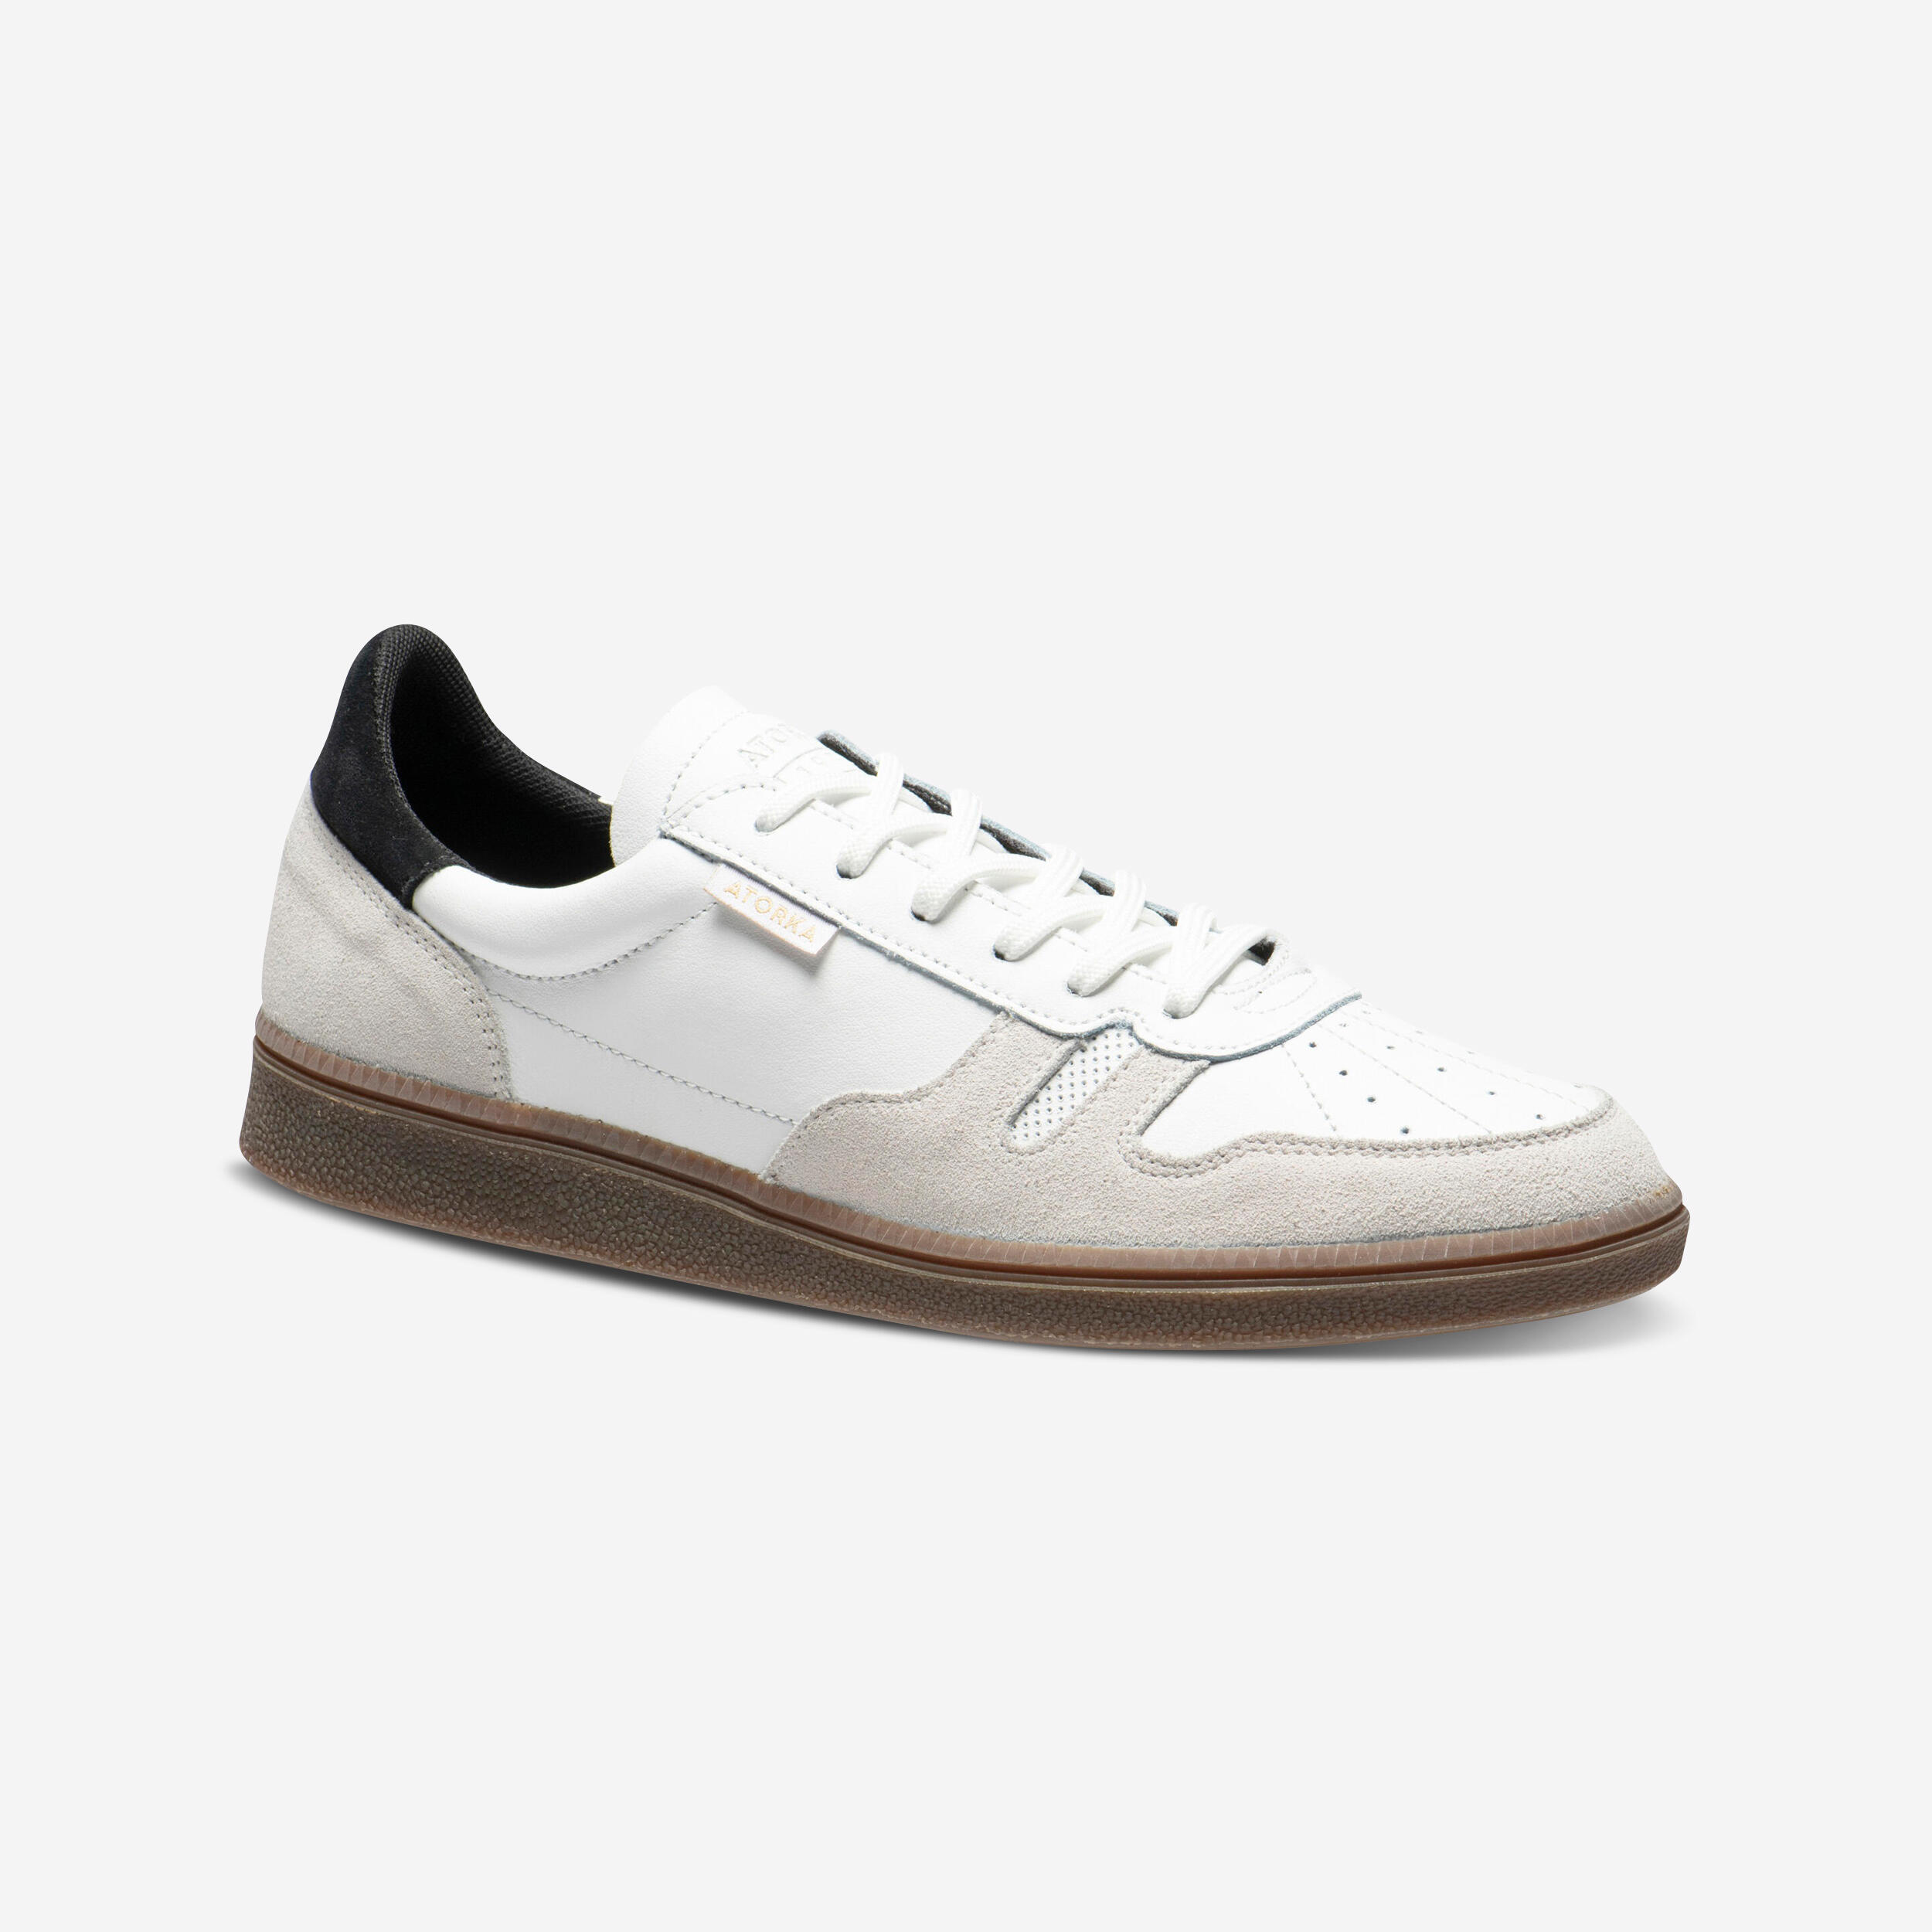 Men's/Women's Handball Goalkeeper Shoes GK500 - White/Black 1/20